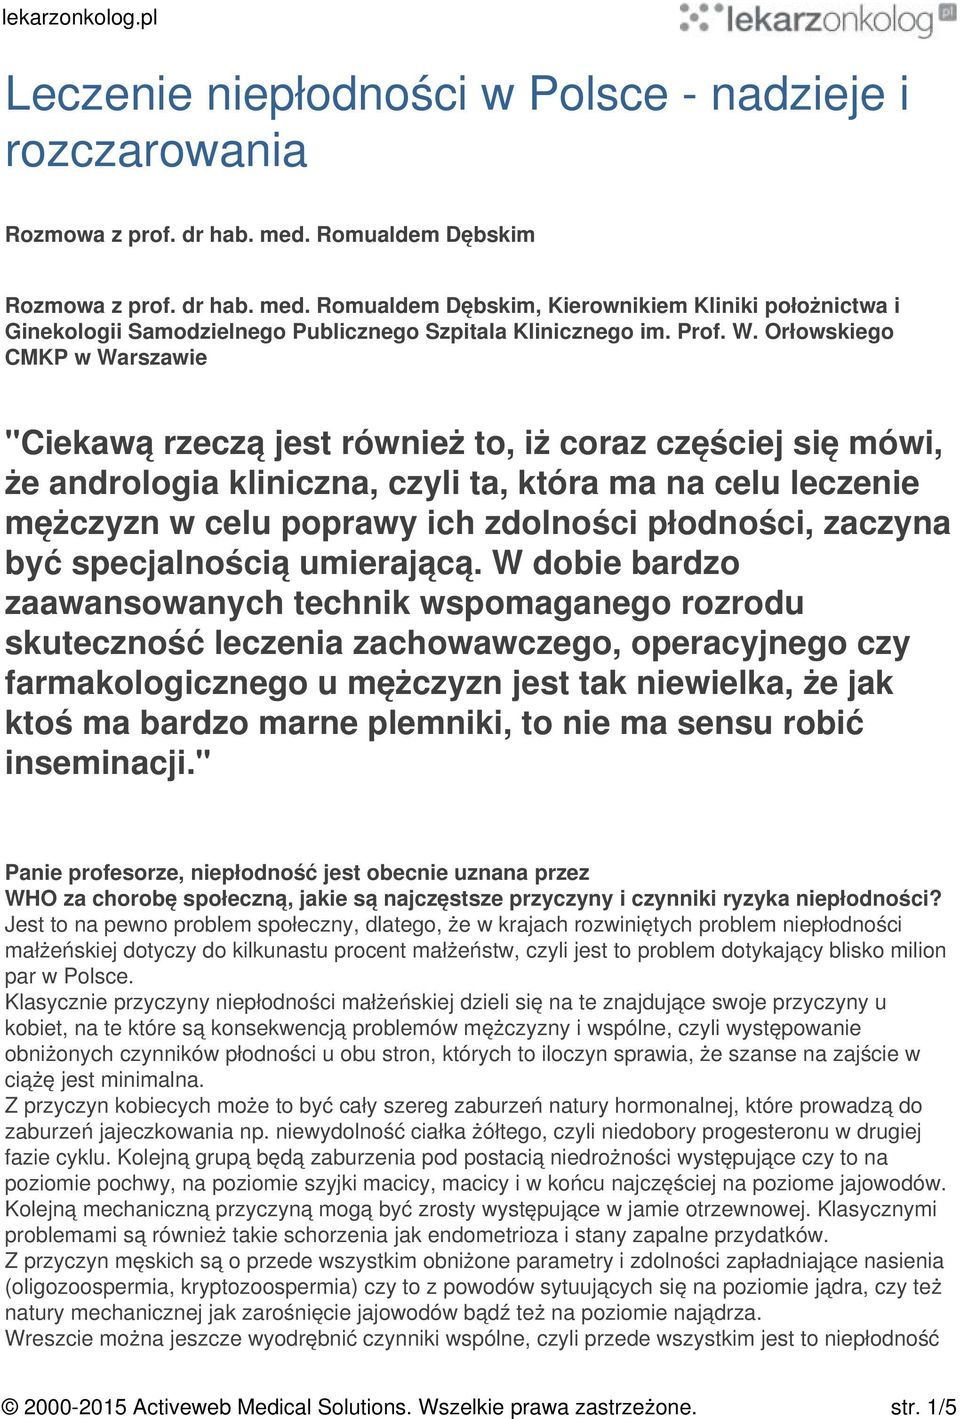 Orłowskiego CMKP w Warszawie "Ciekawą rzeczą jest również to, iż coraz częściej się mówi, że andrologia kliniczna, czyli ta, która ma na celu leczenie mężczyzn w celu poprawy ich zdolności płodności,